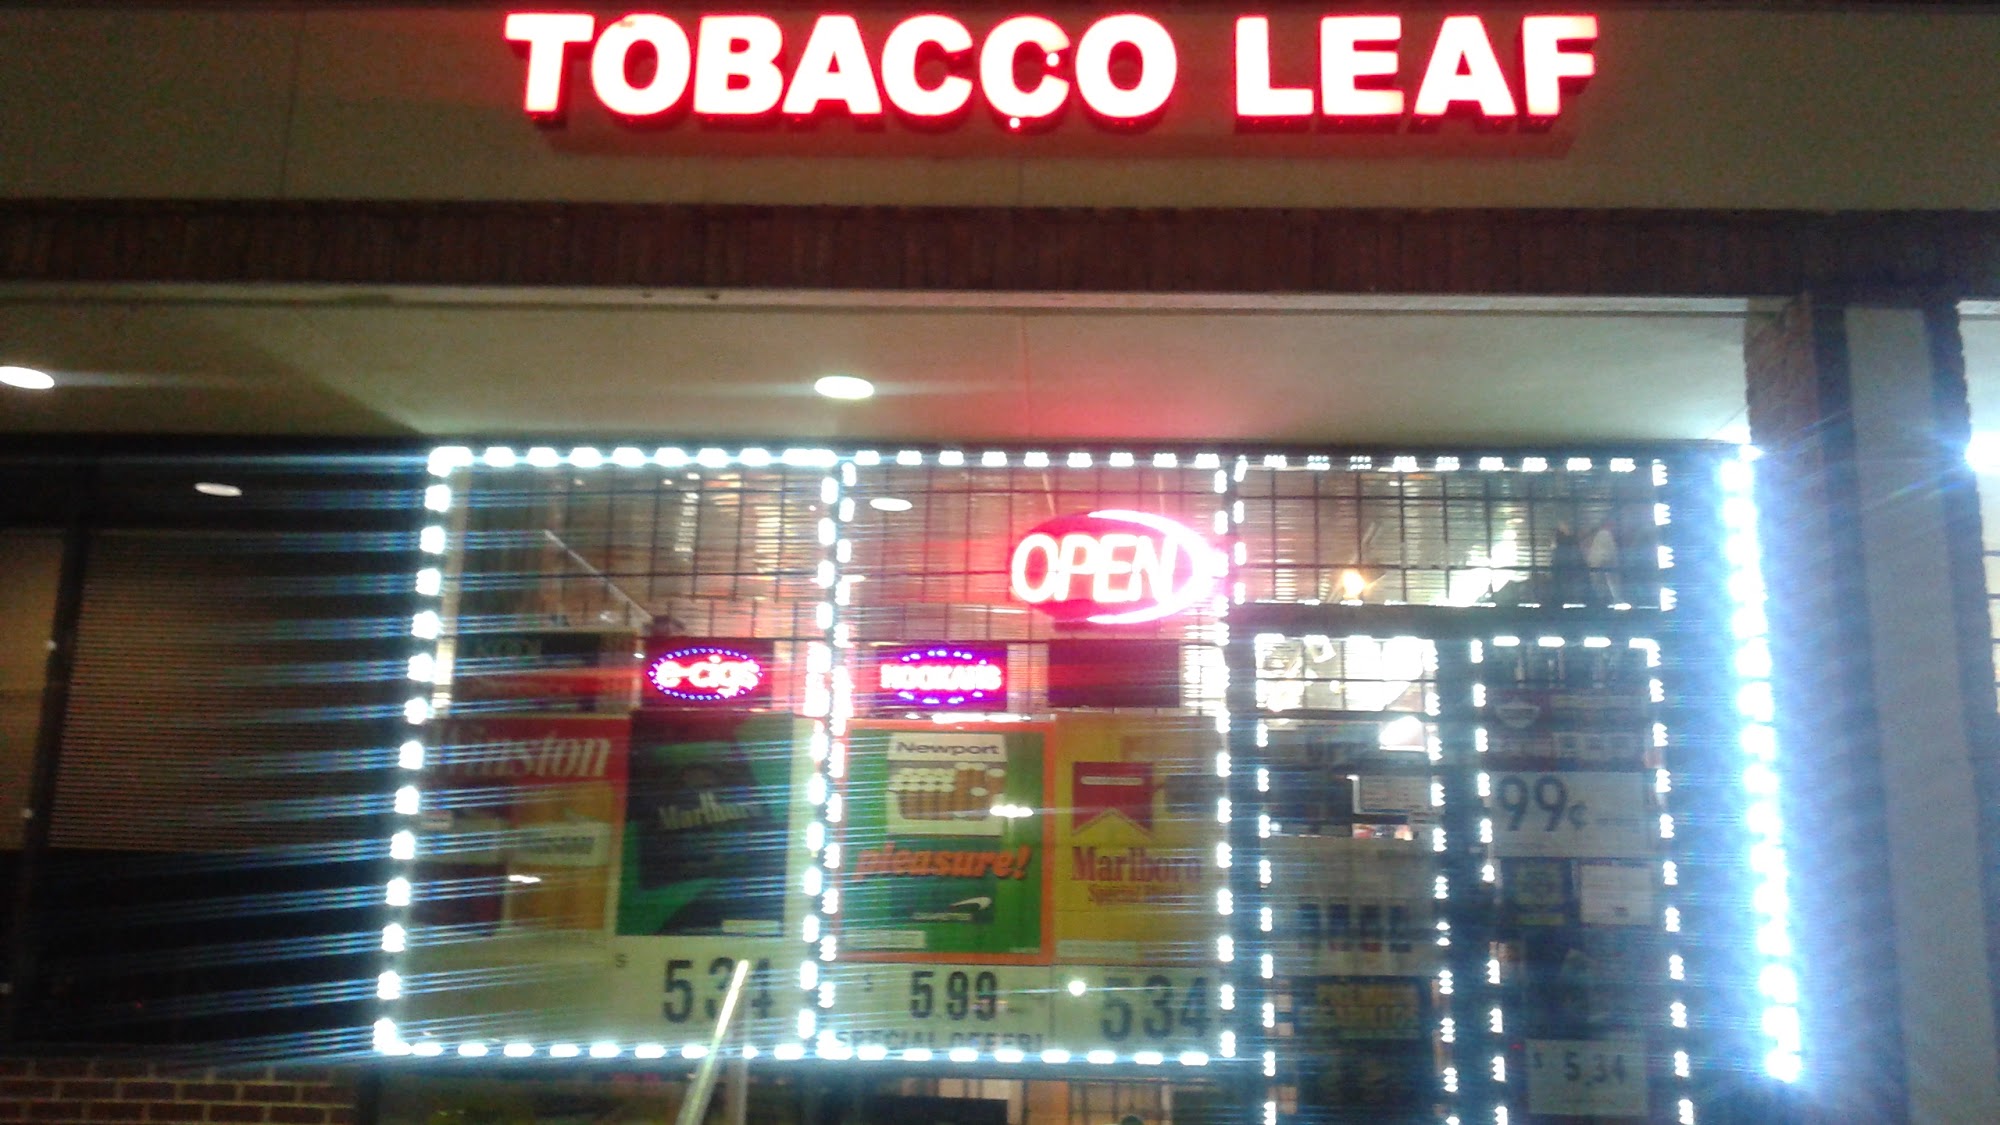 Tobacco Leaf 4 Less & Vapor